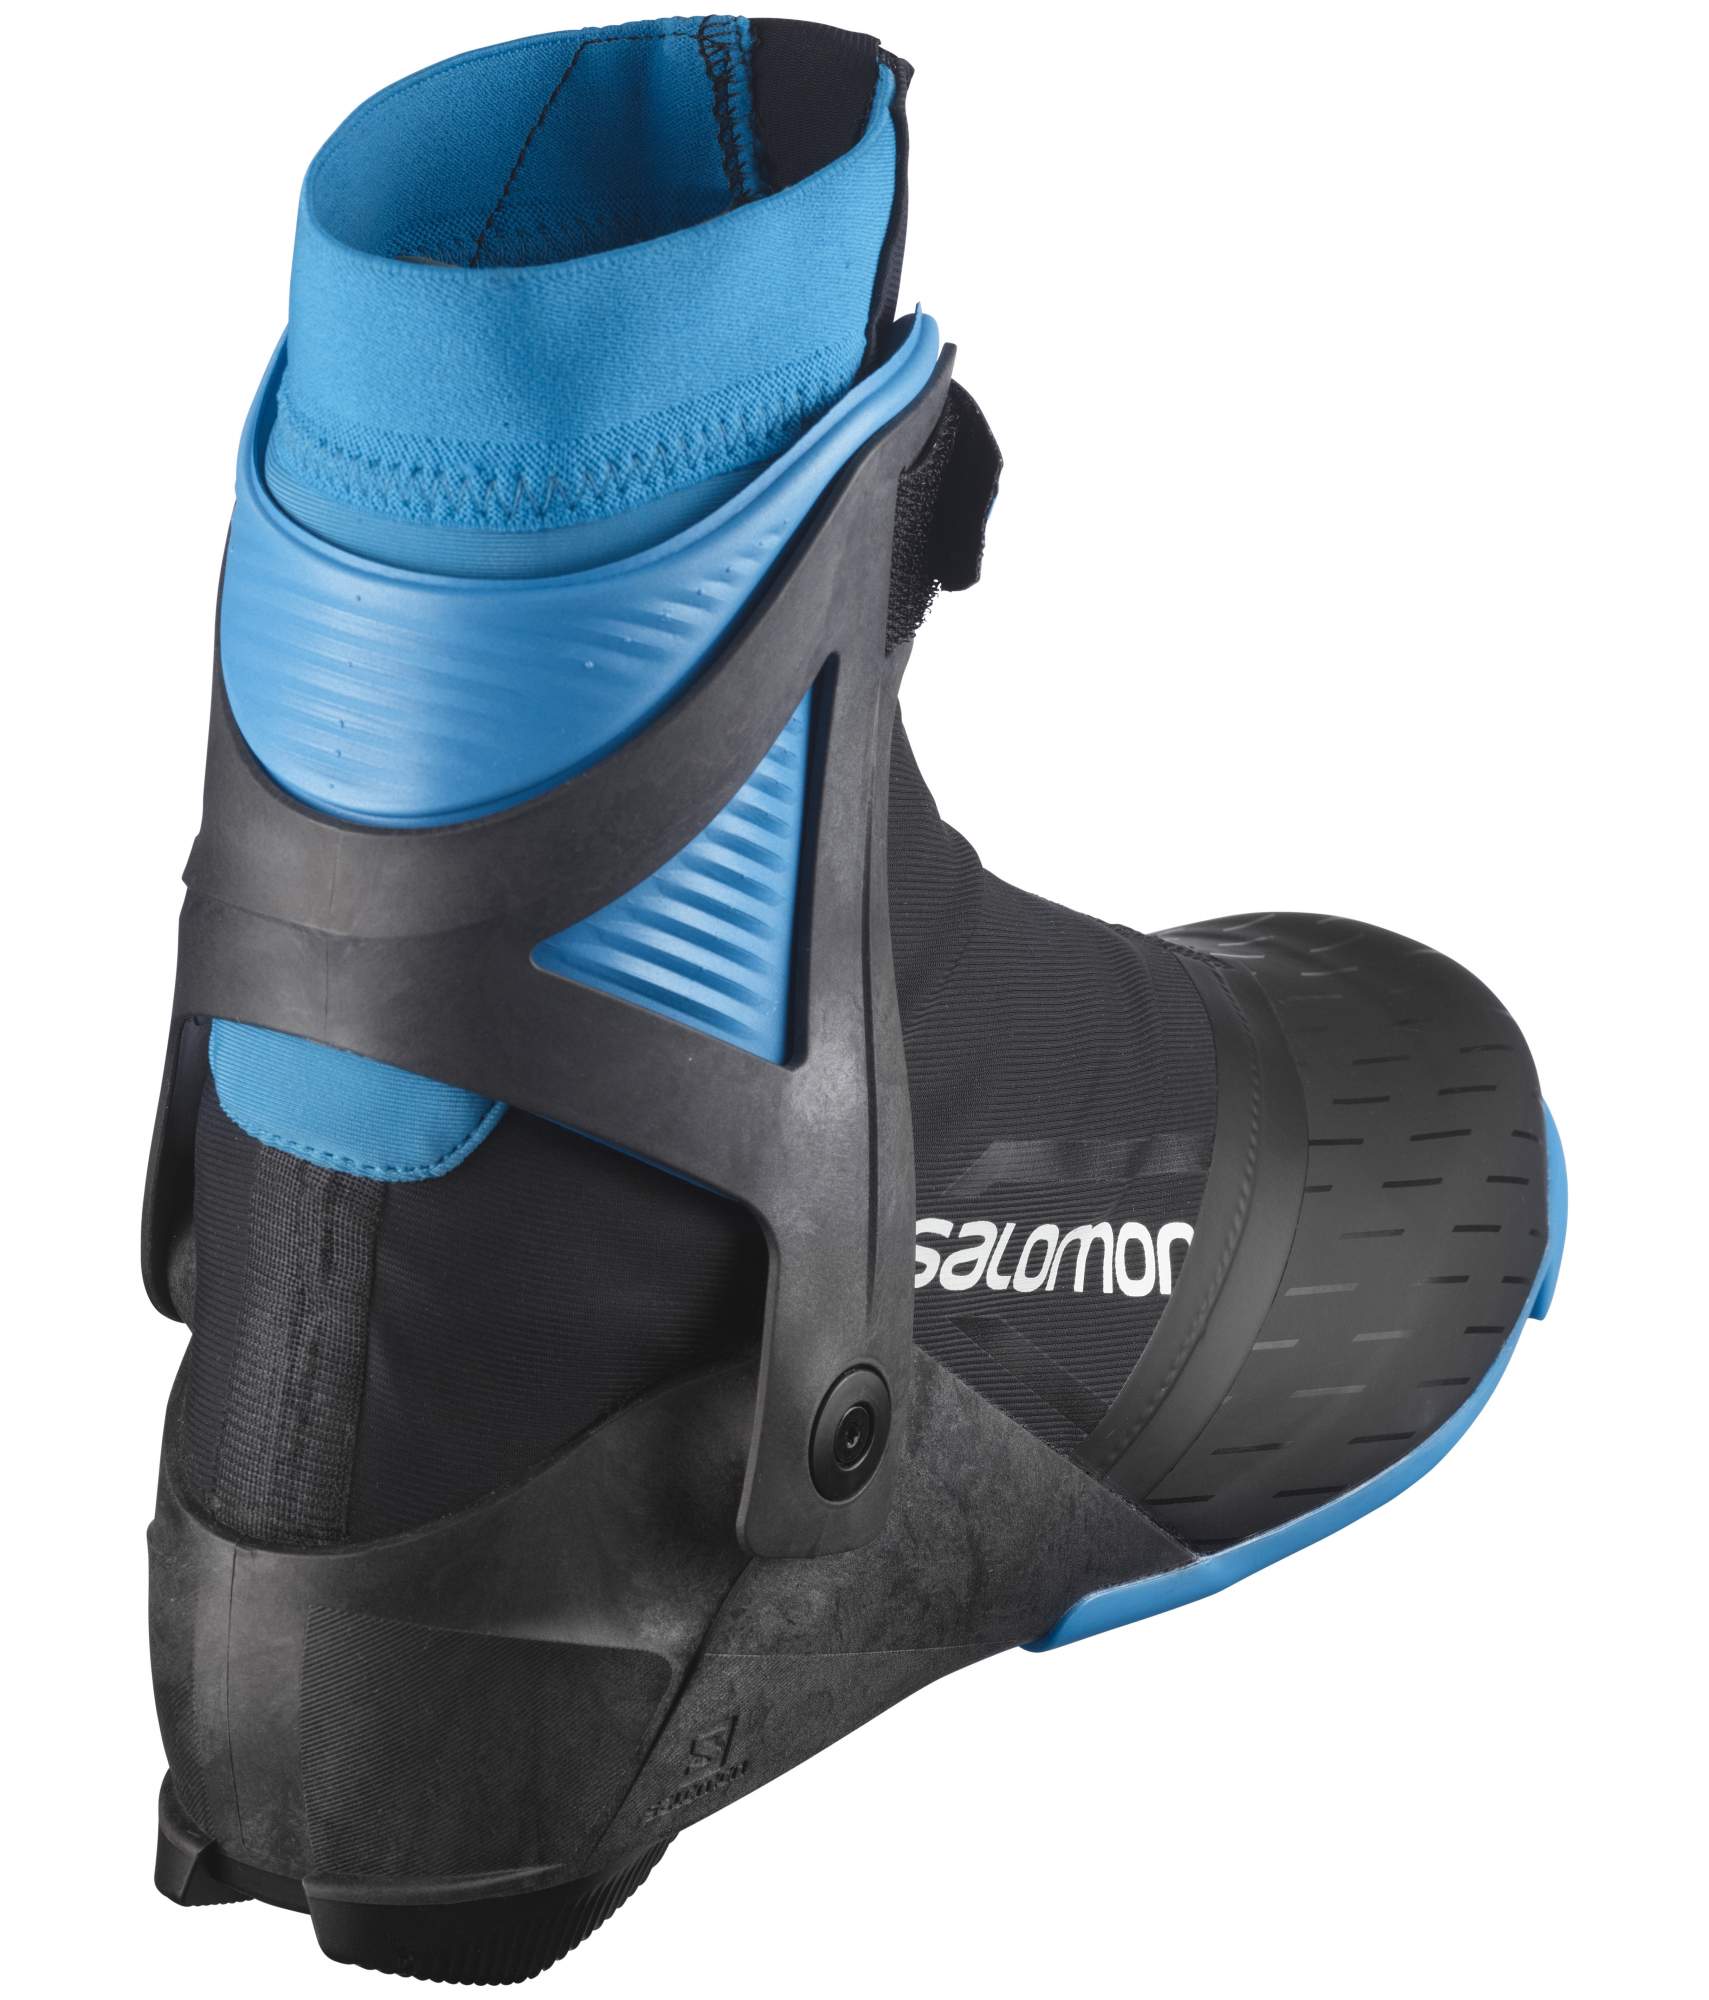 Ботинки для беговых лыж Salomon S/Max Carbon Skate Prolink 2021/2022, 42.5 EUR